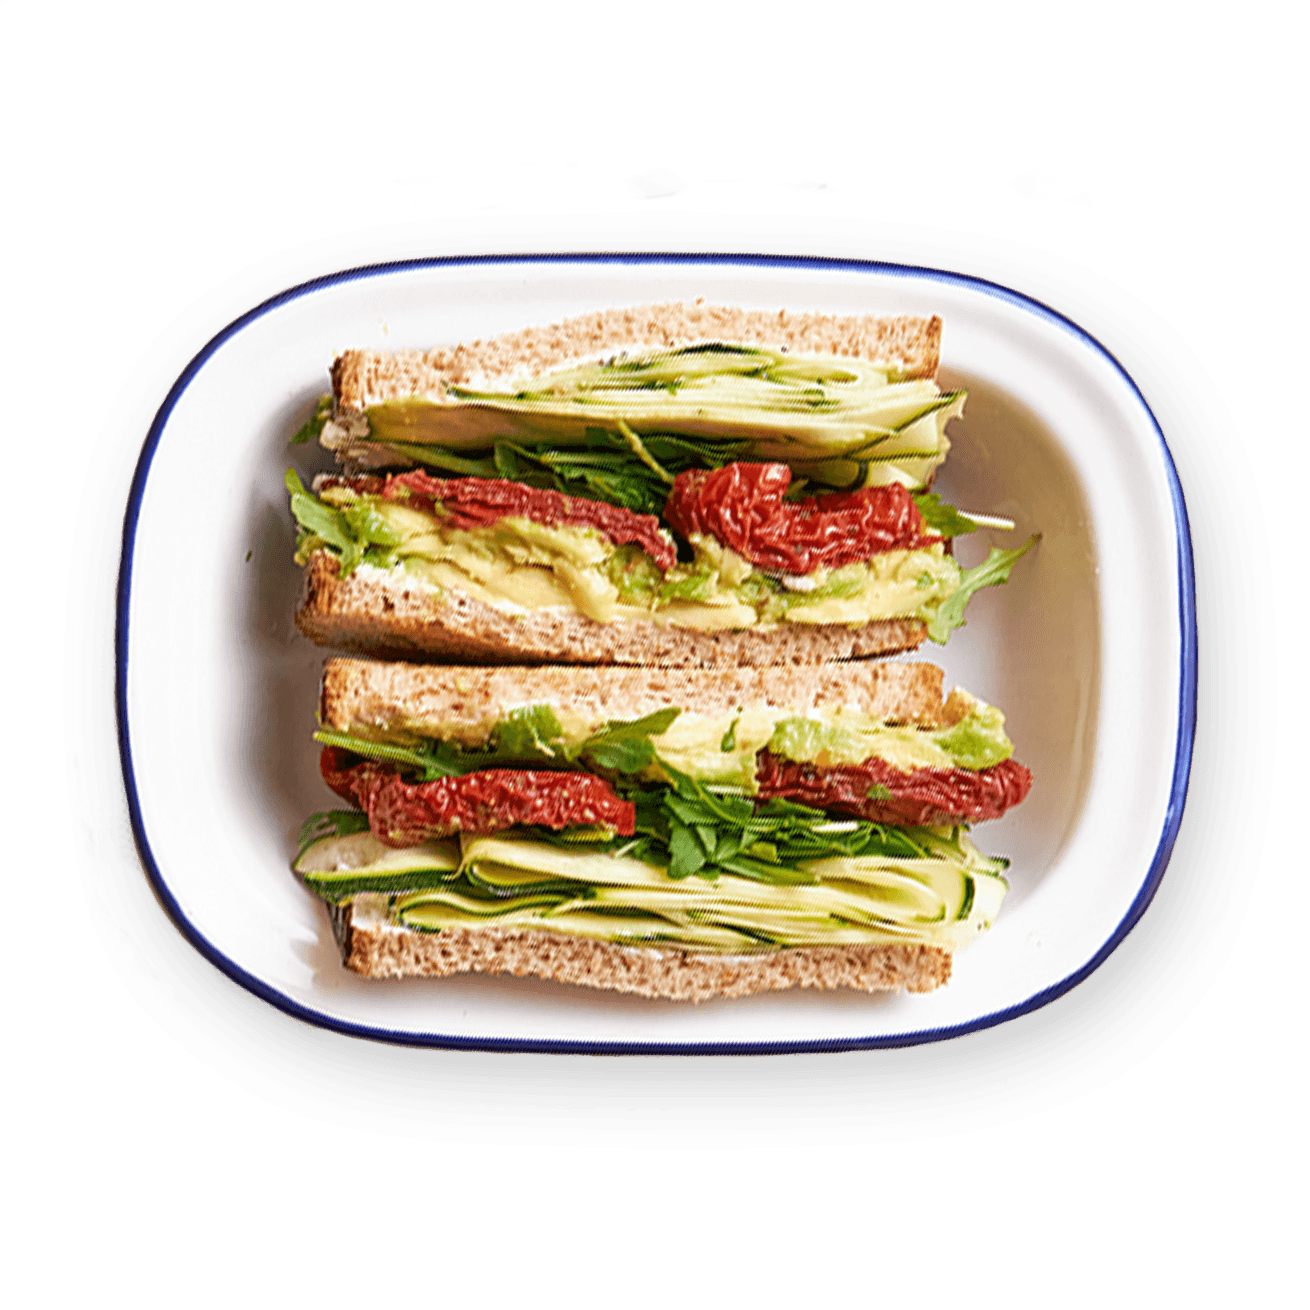 zucchini-avocado-and-sun-dried-tomato-sandwich